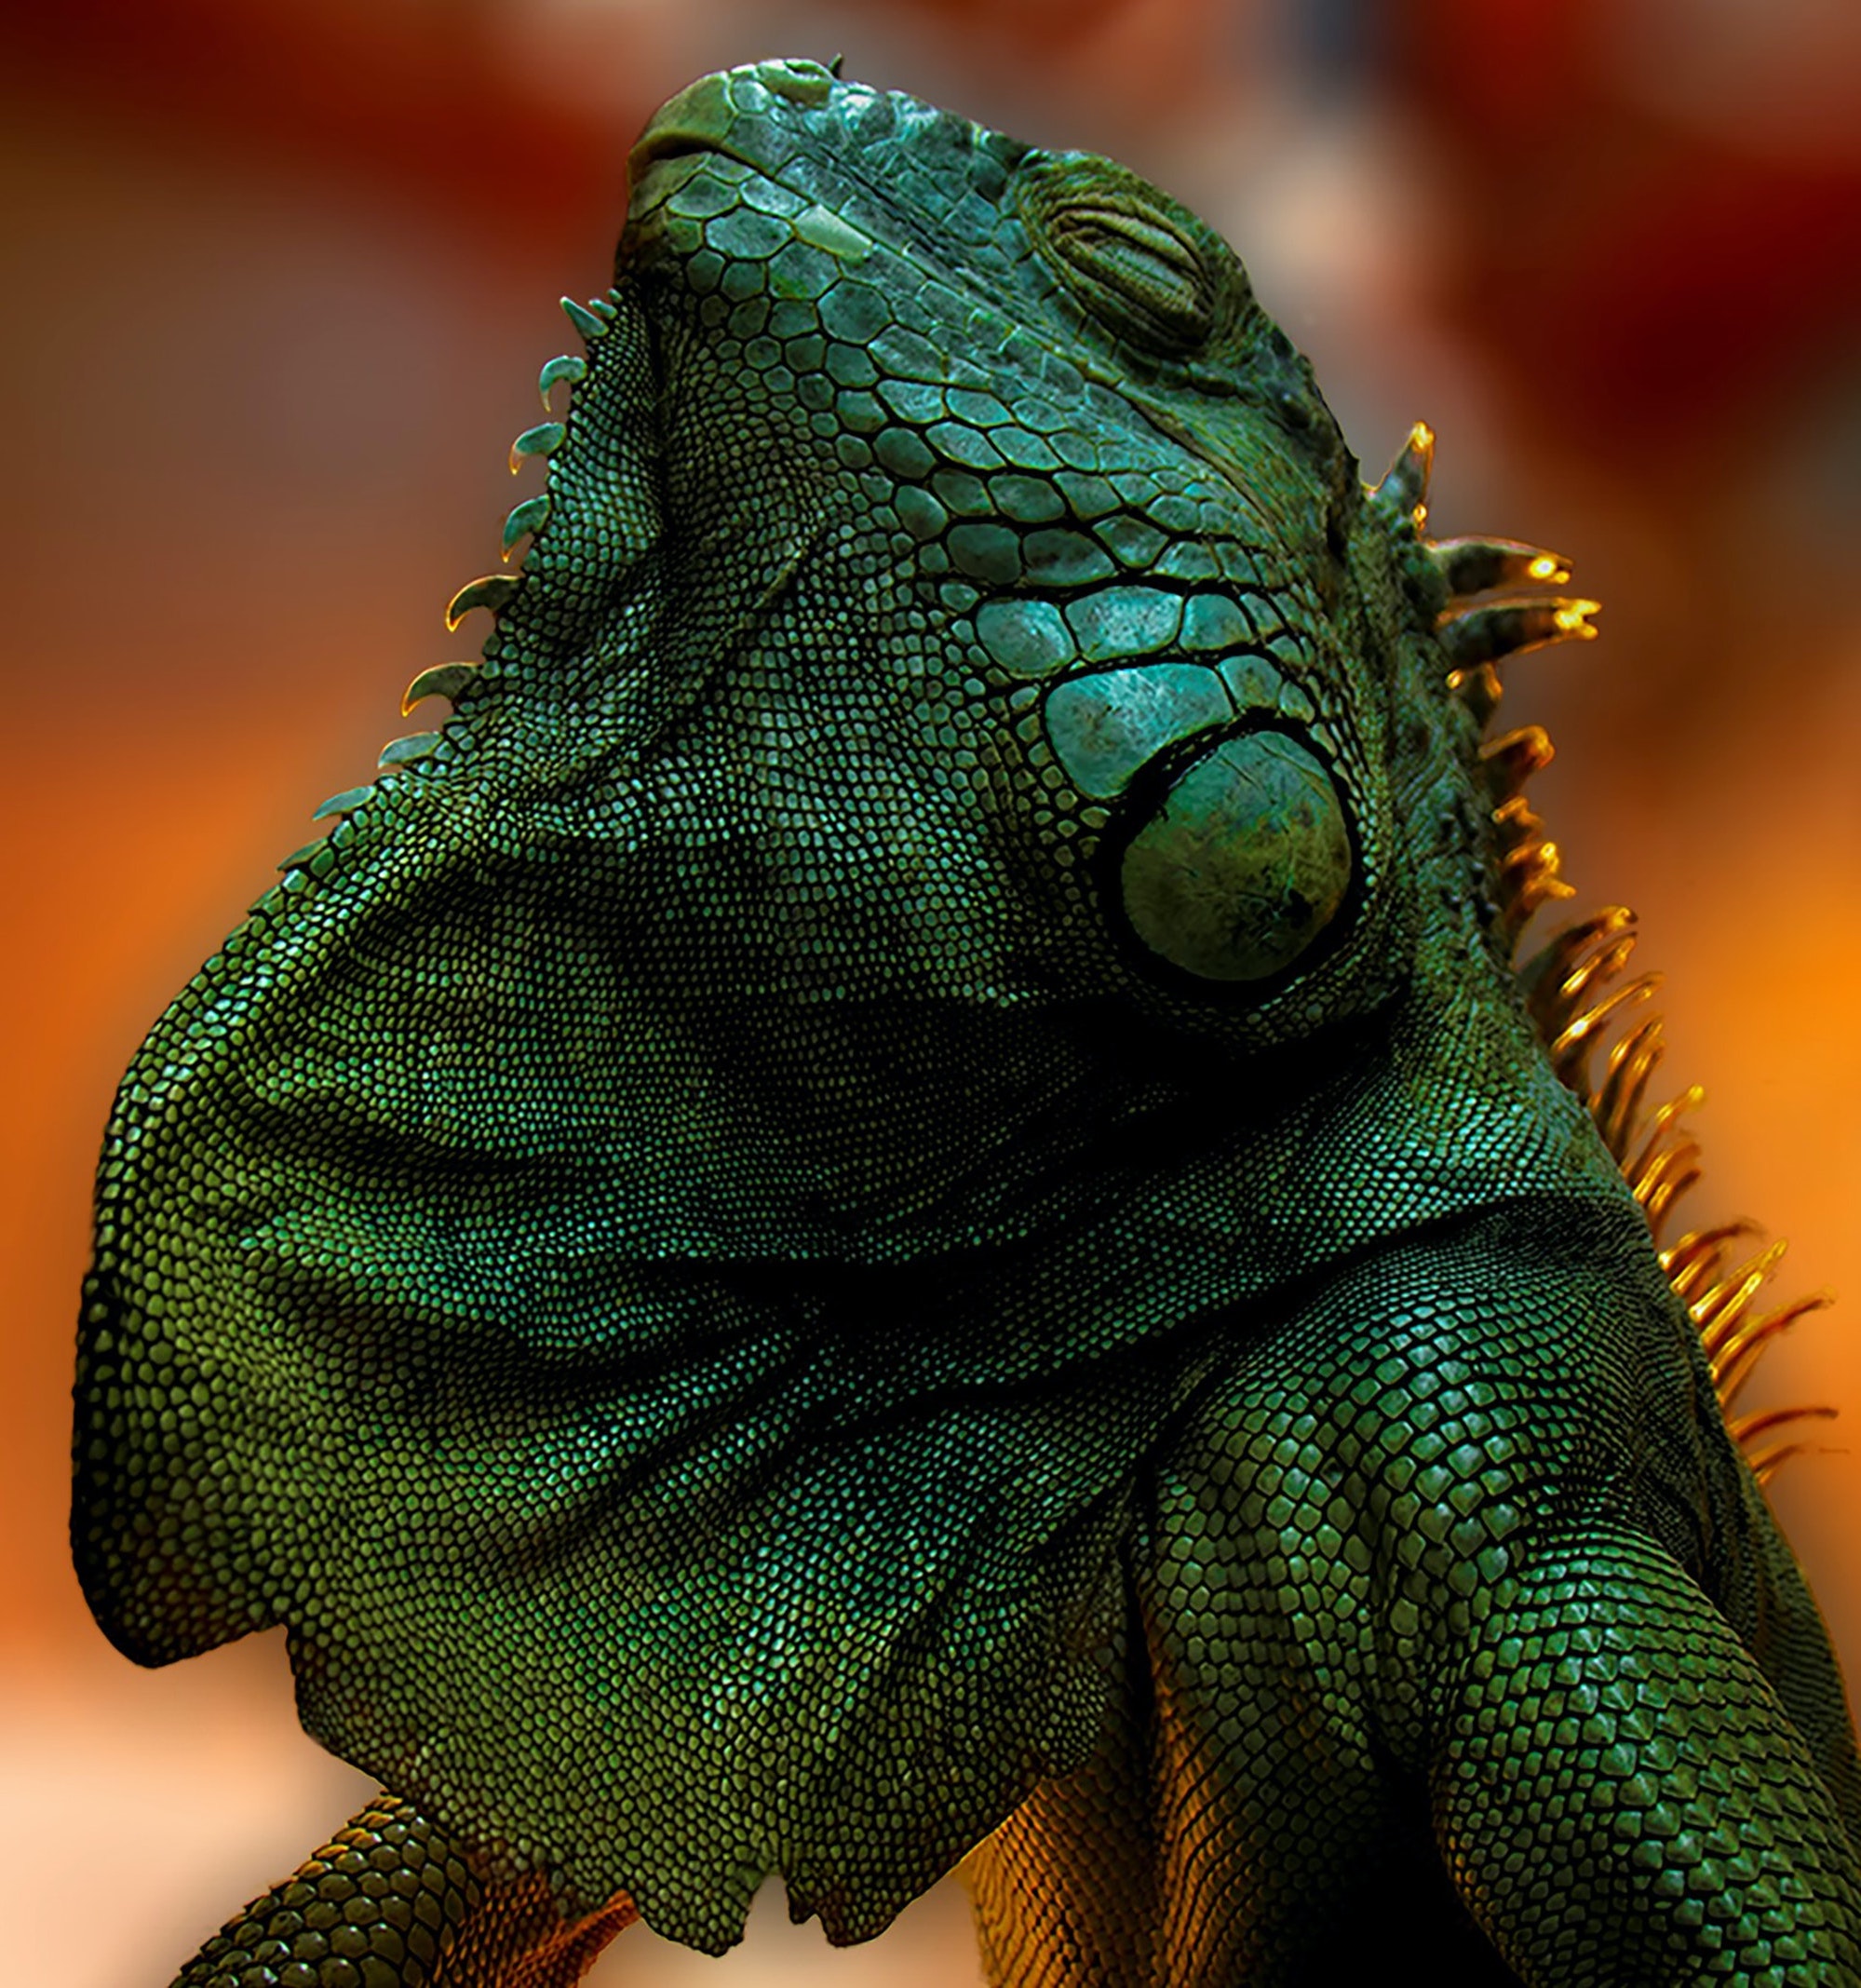 Florida Iguana